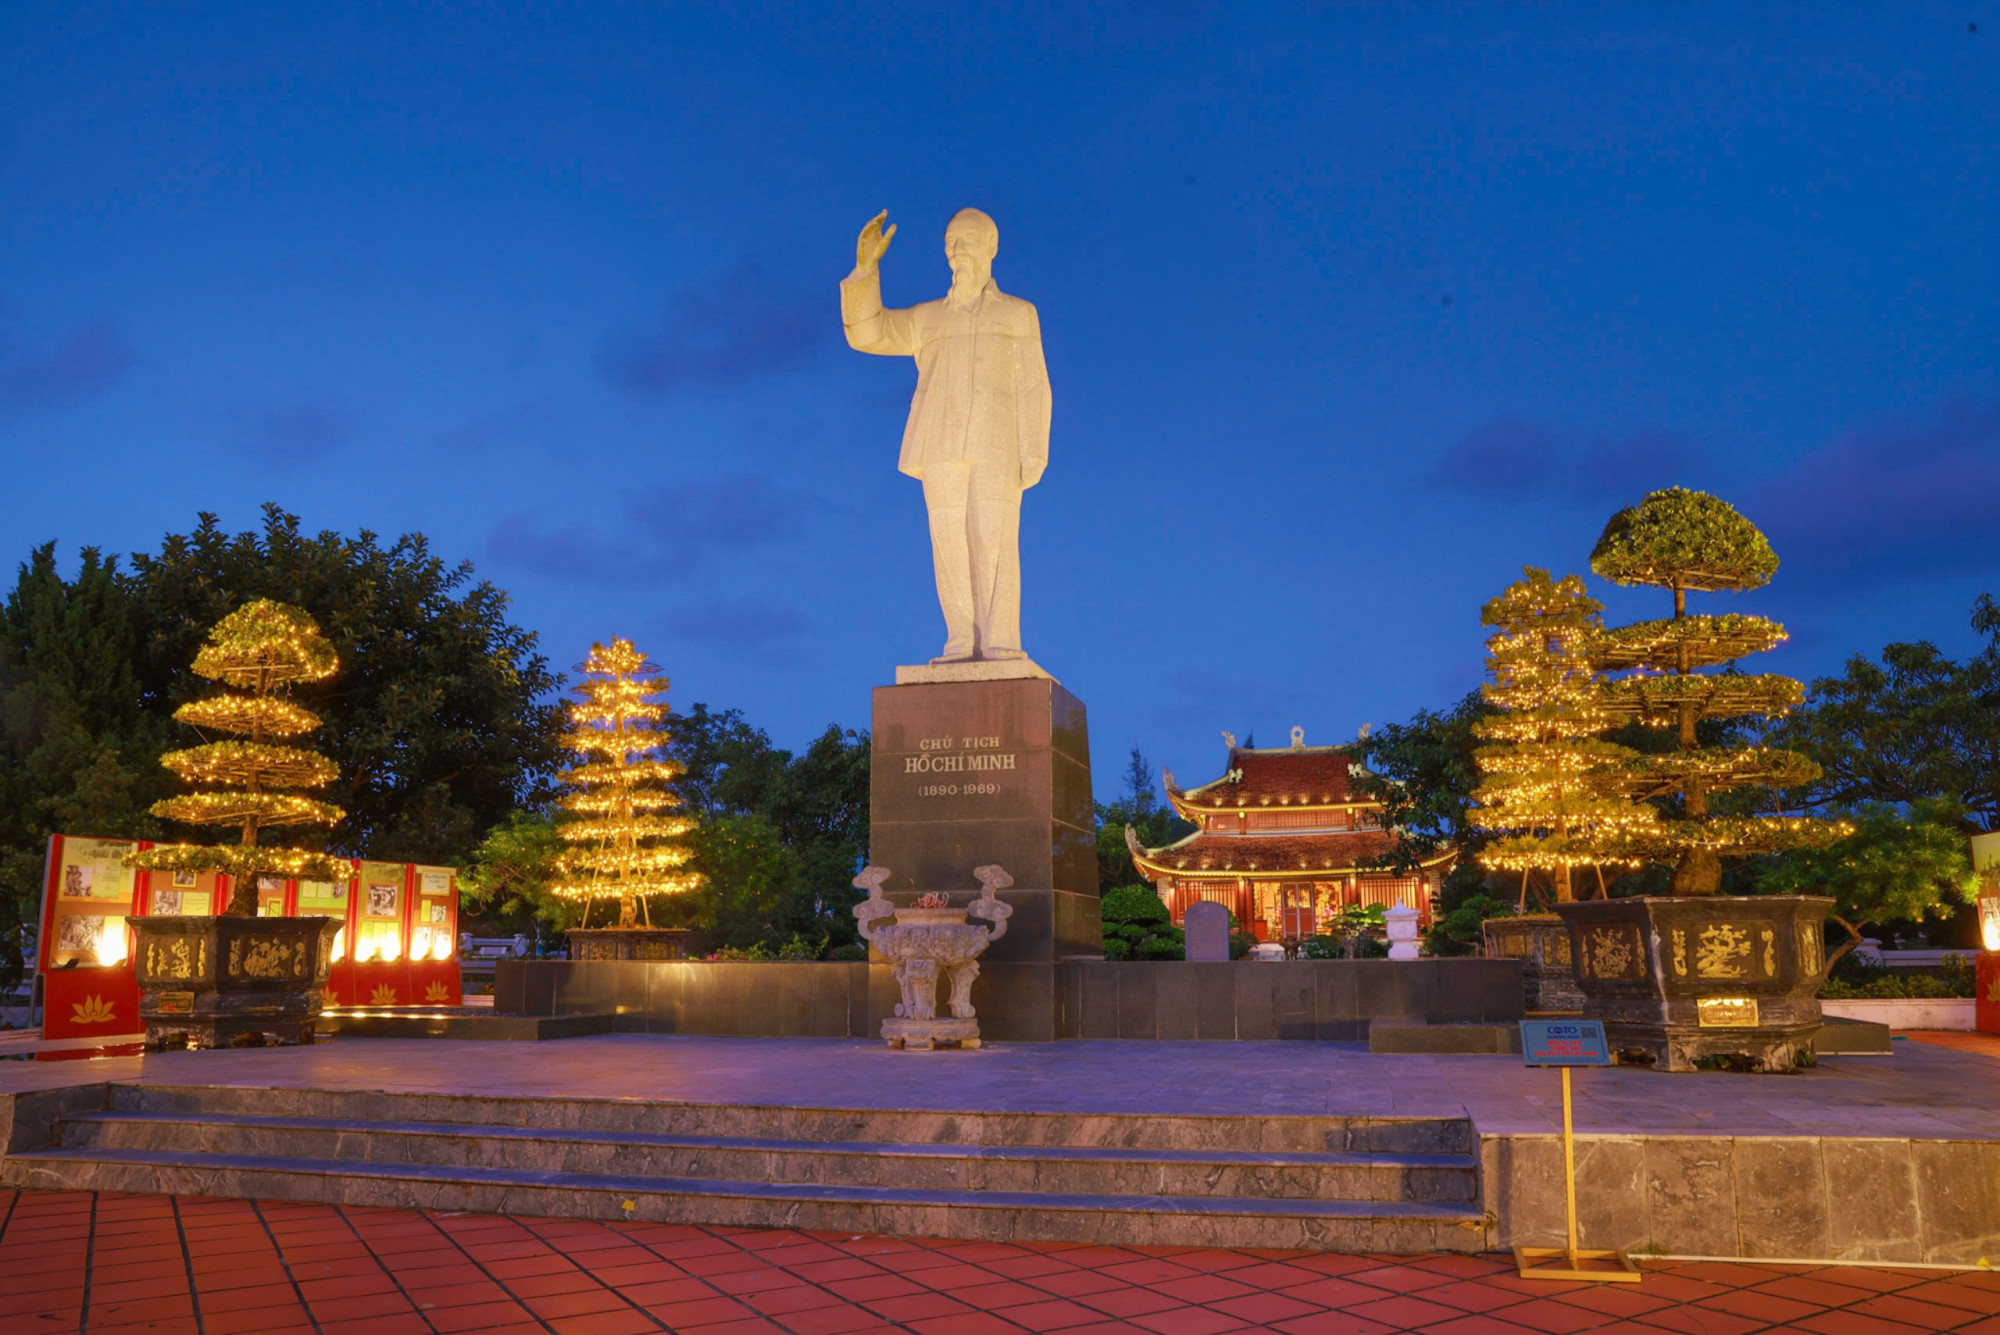 Khu di tích lưu niệm Chủ tịch Hồ Chí Minh  Nơi này được công nhận là khu di tích lịch sử cấp quốc gia từ năm 1997. Khu lưu niệm có các điểm di tích gắn với những nơi mà Chủ tịch Hồ Chí Minh đến trong chuyến thăm huyện đảo năm 1961 và 1962.